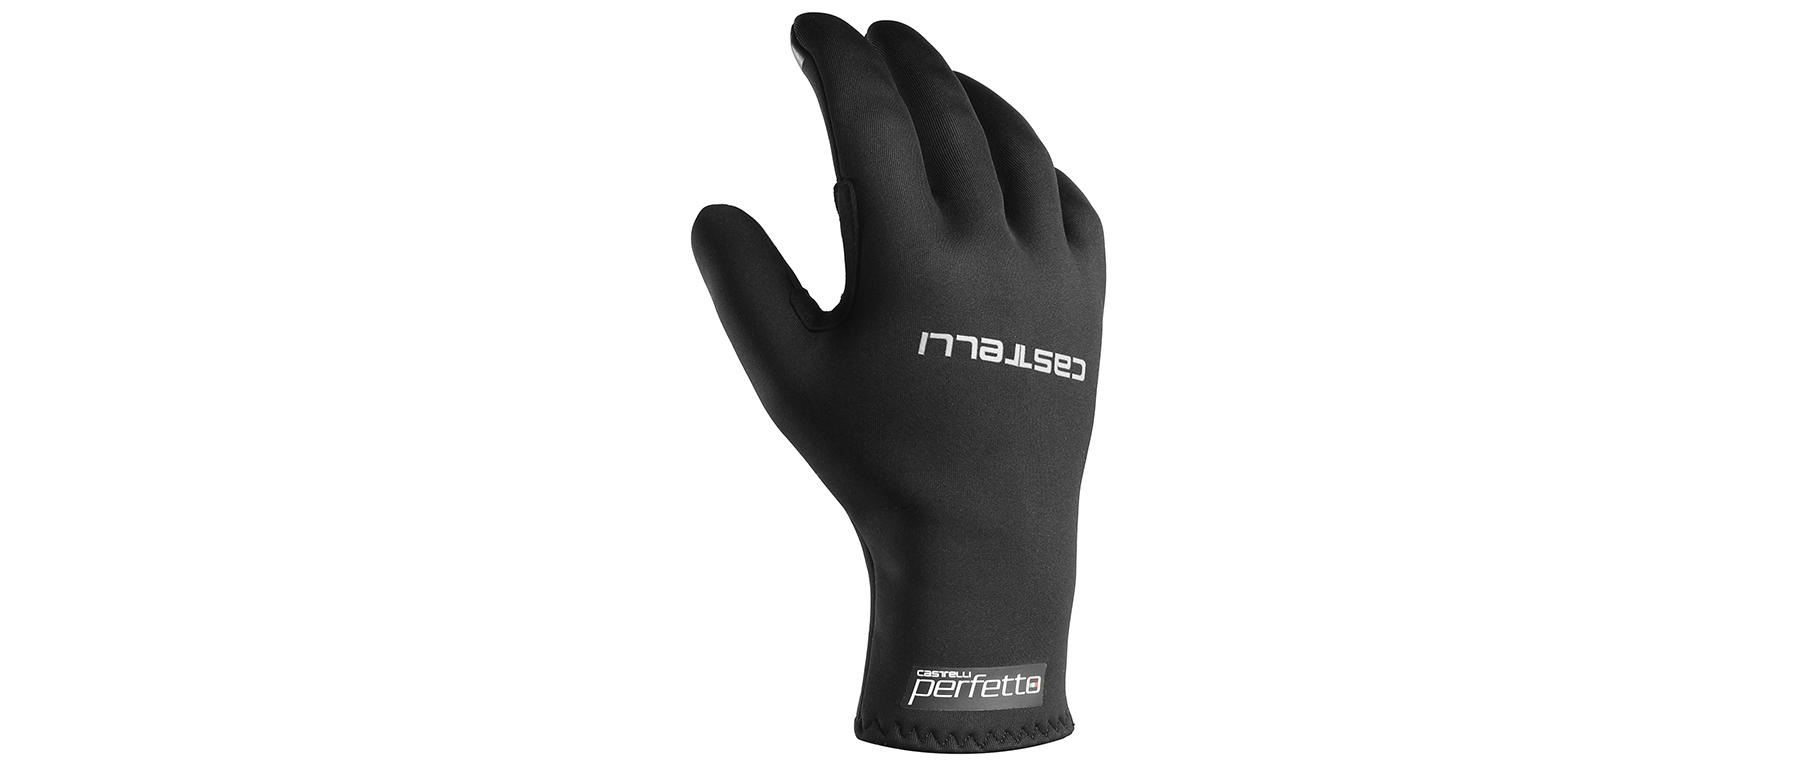 Castelli Perfetto Max Glove